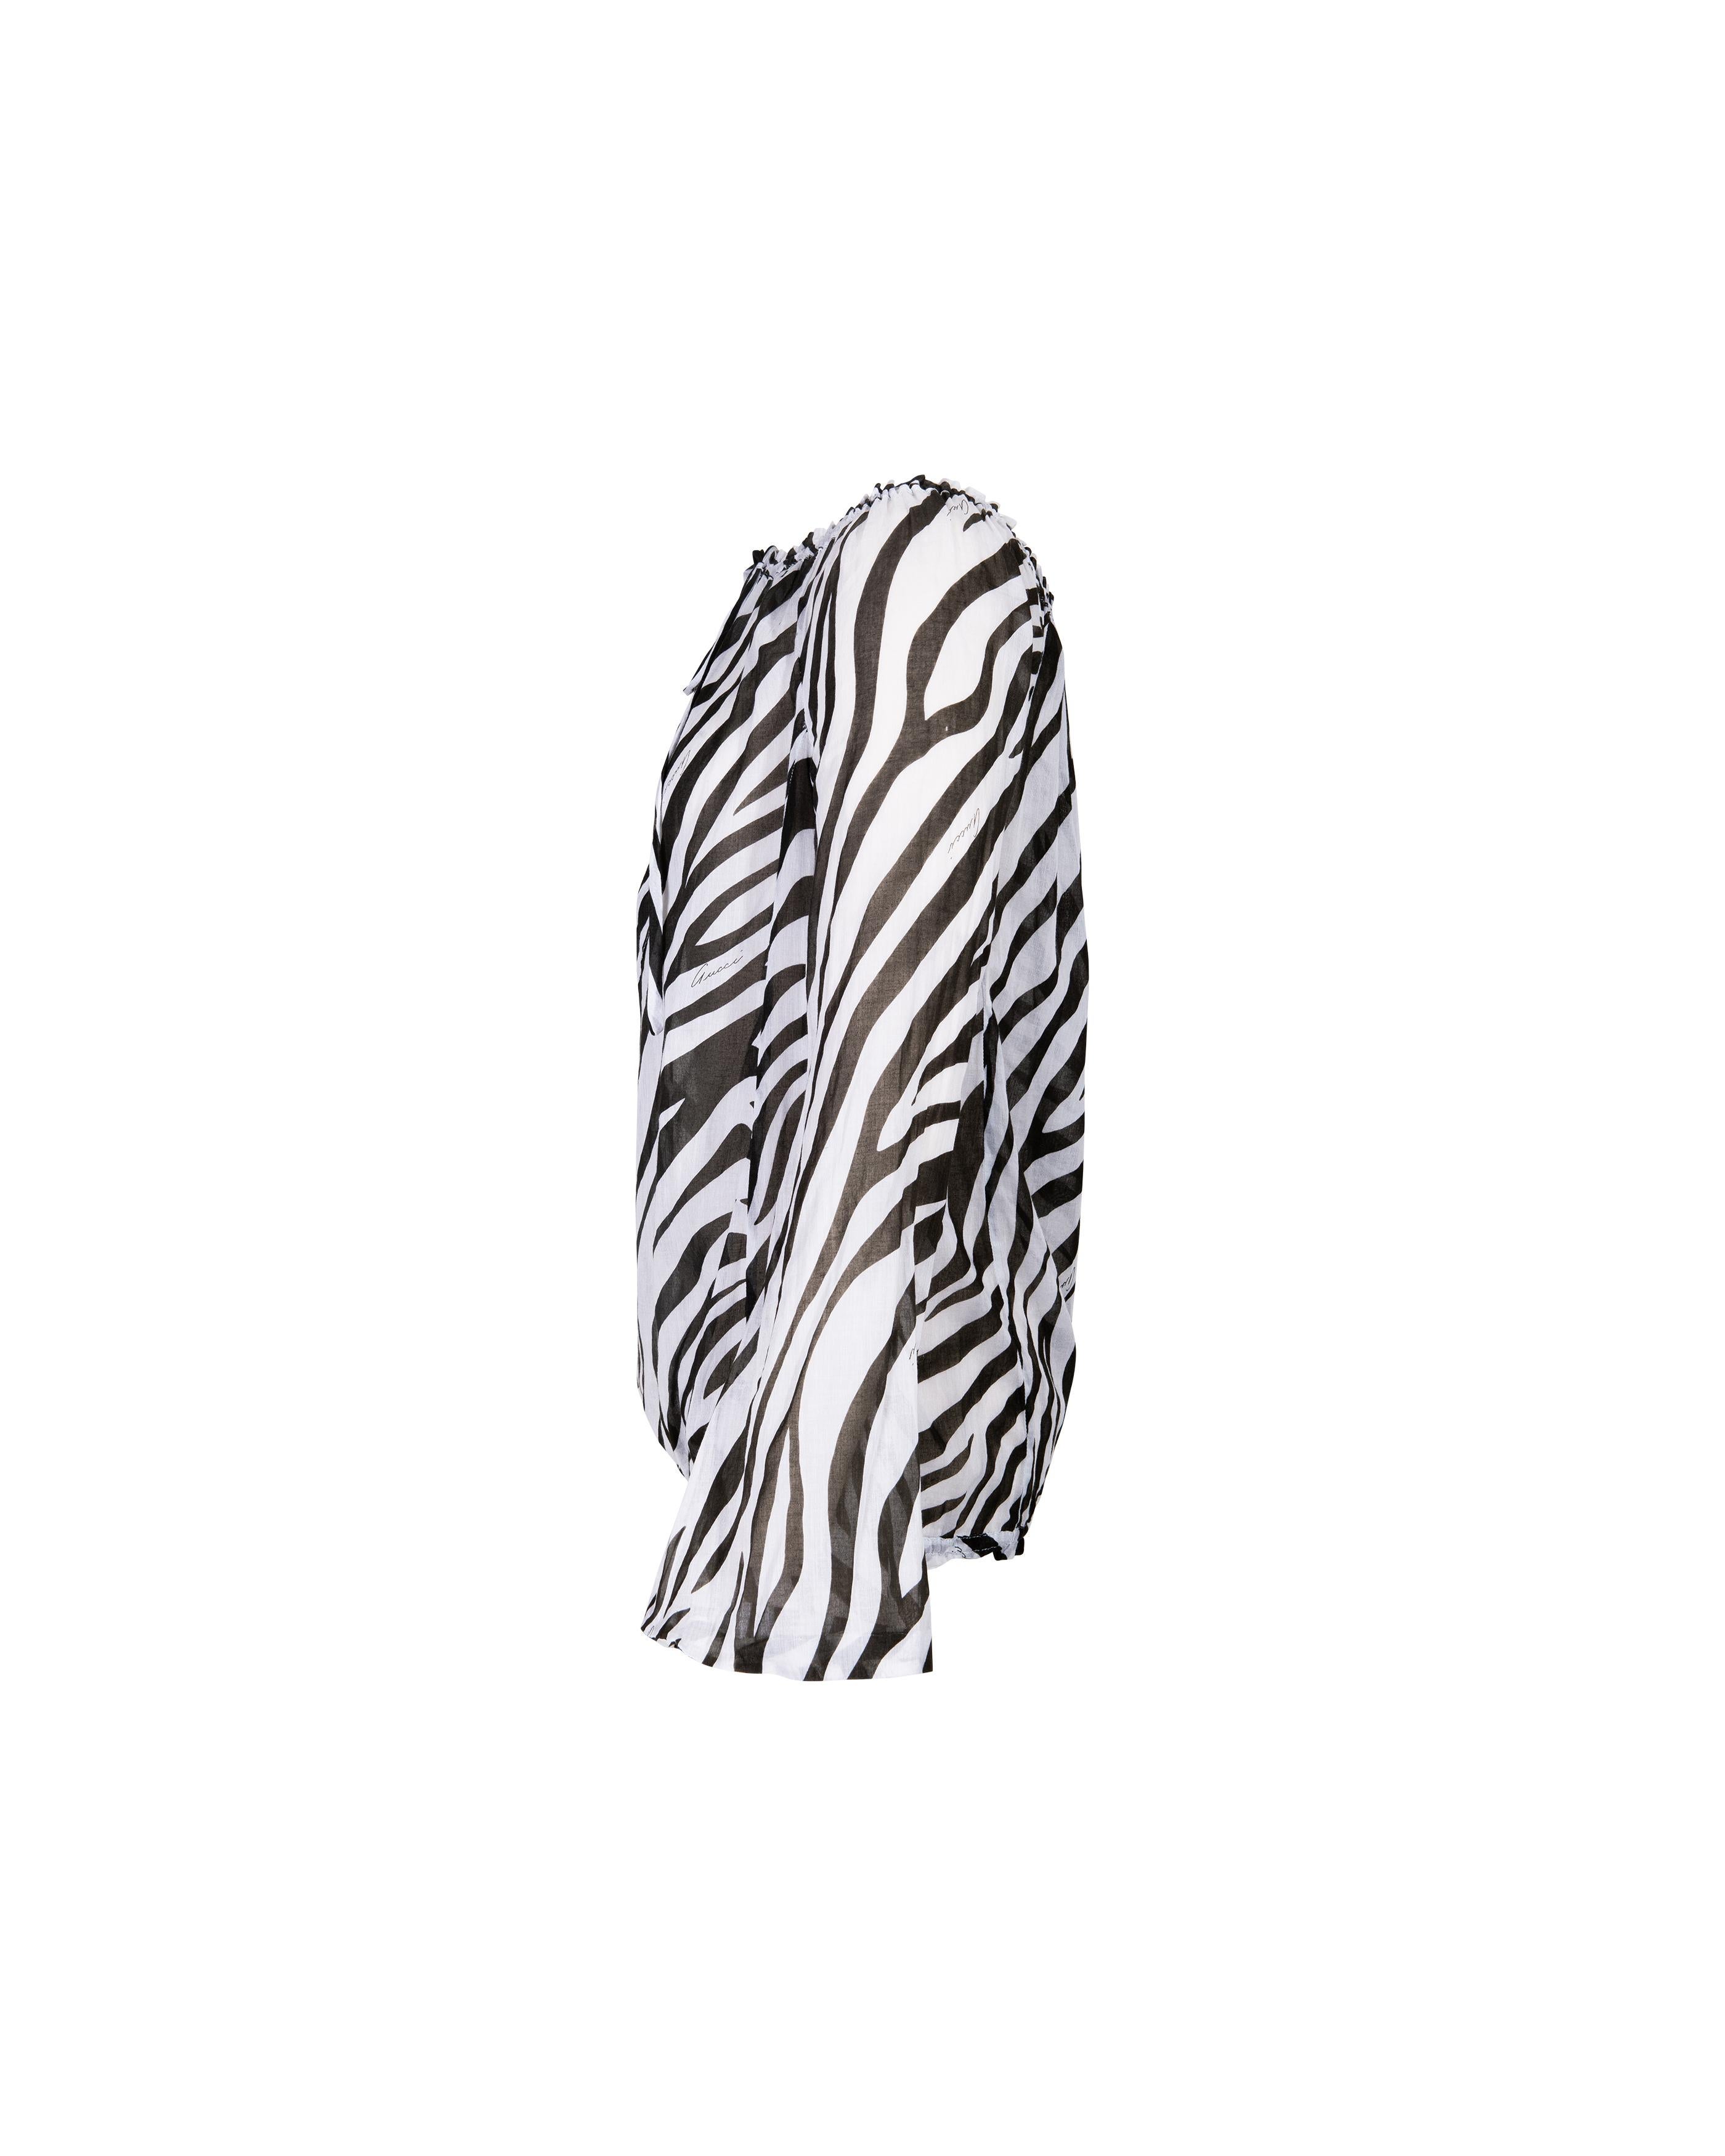  S/S 1996 Gucci by Tom Ford Blouse en coton imprimé zèbre noir et blanc Pour femmes 